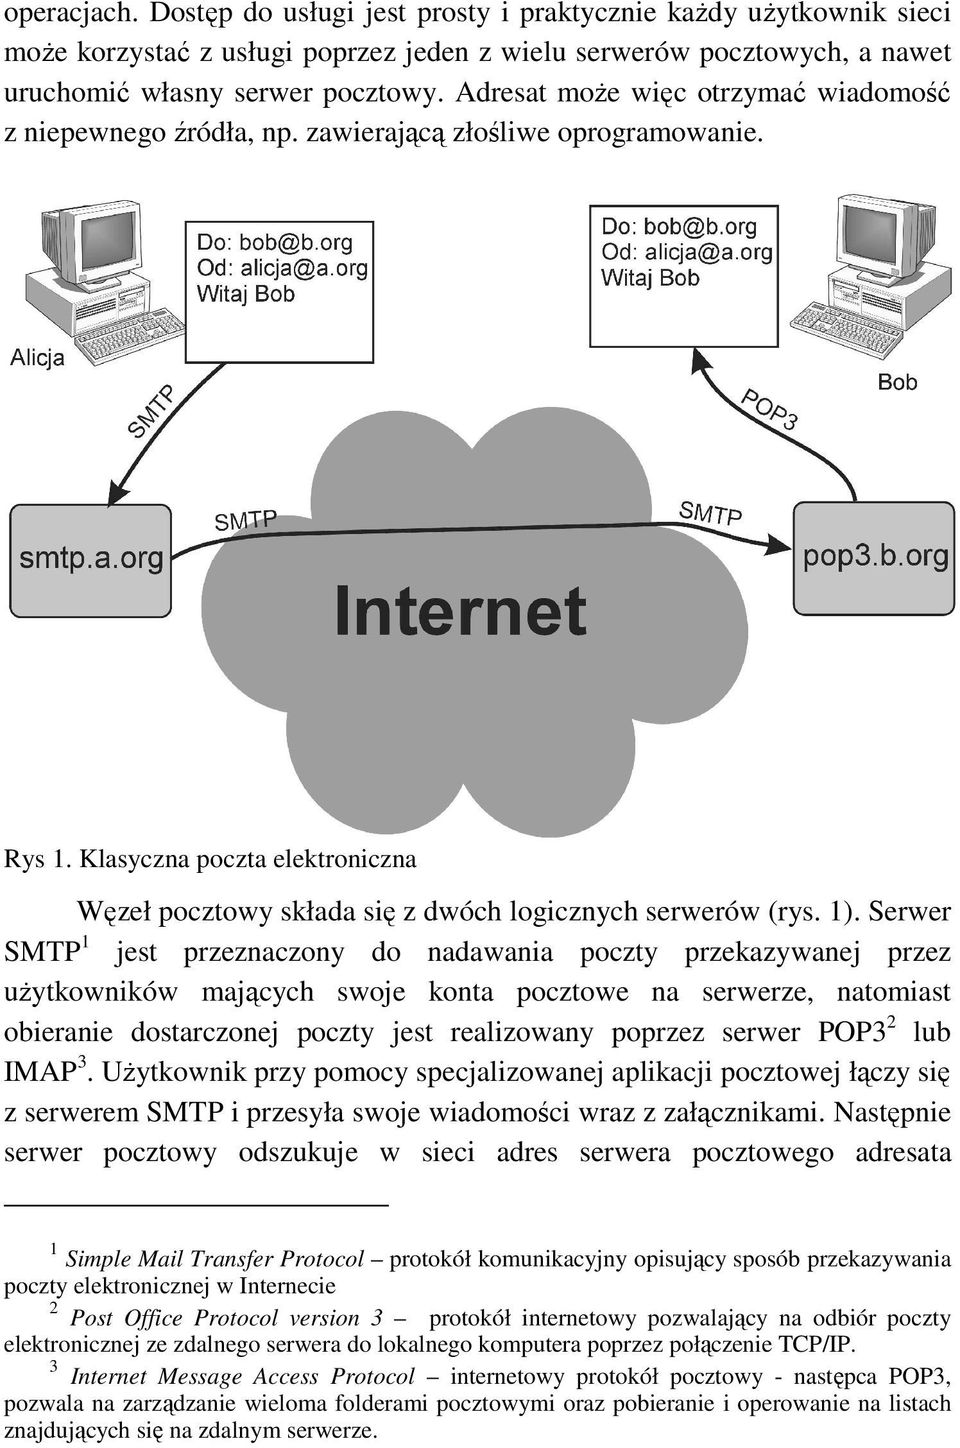 Serwer SMTP 1 jest przeznaczony do nadawania poczty przekazywanej przez uŝytkowników mających swoje konta pocztowe na serwerze, natomiast obieranie dostarczonej poczty jest realizowany poprzez serwer